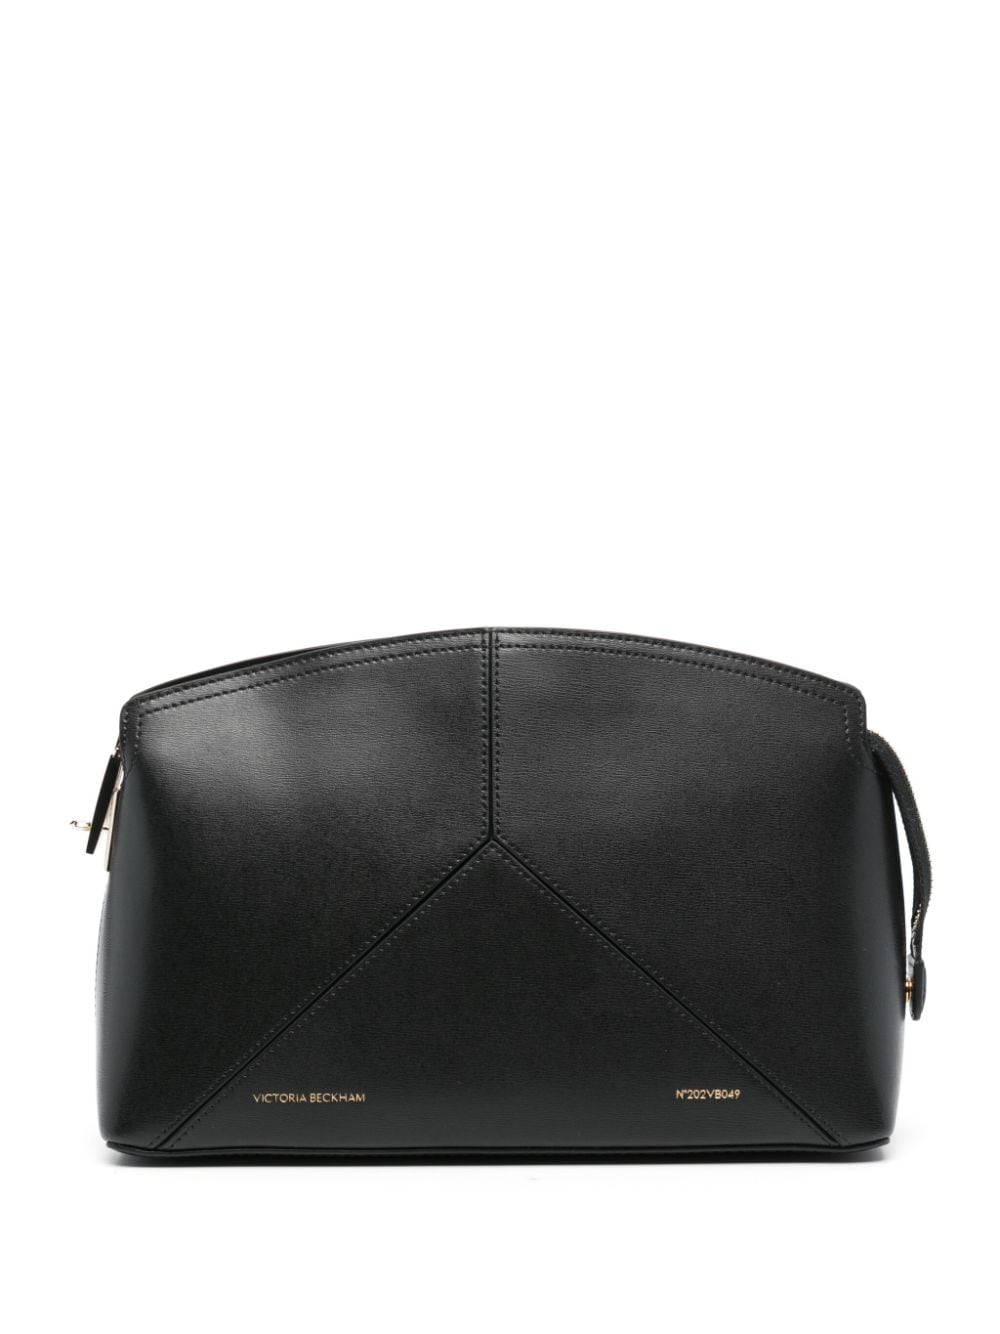 Victoria Beckham Victoria leather clutch bag - Black von Victoria Beckham